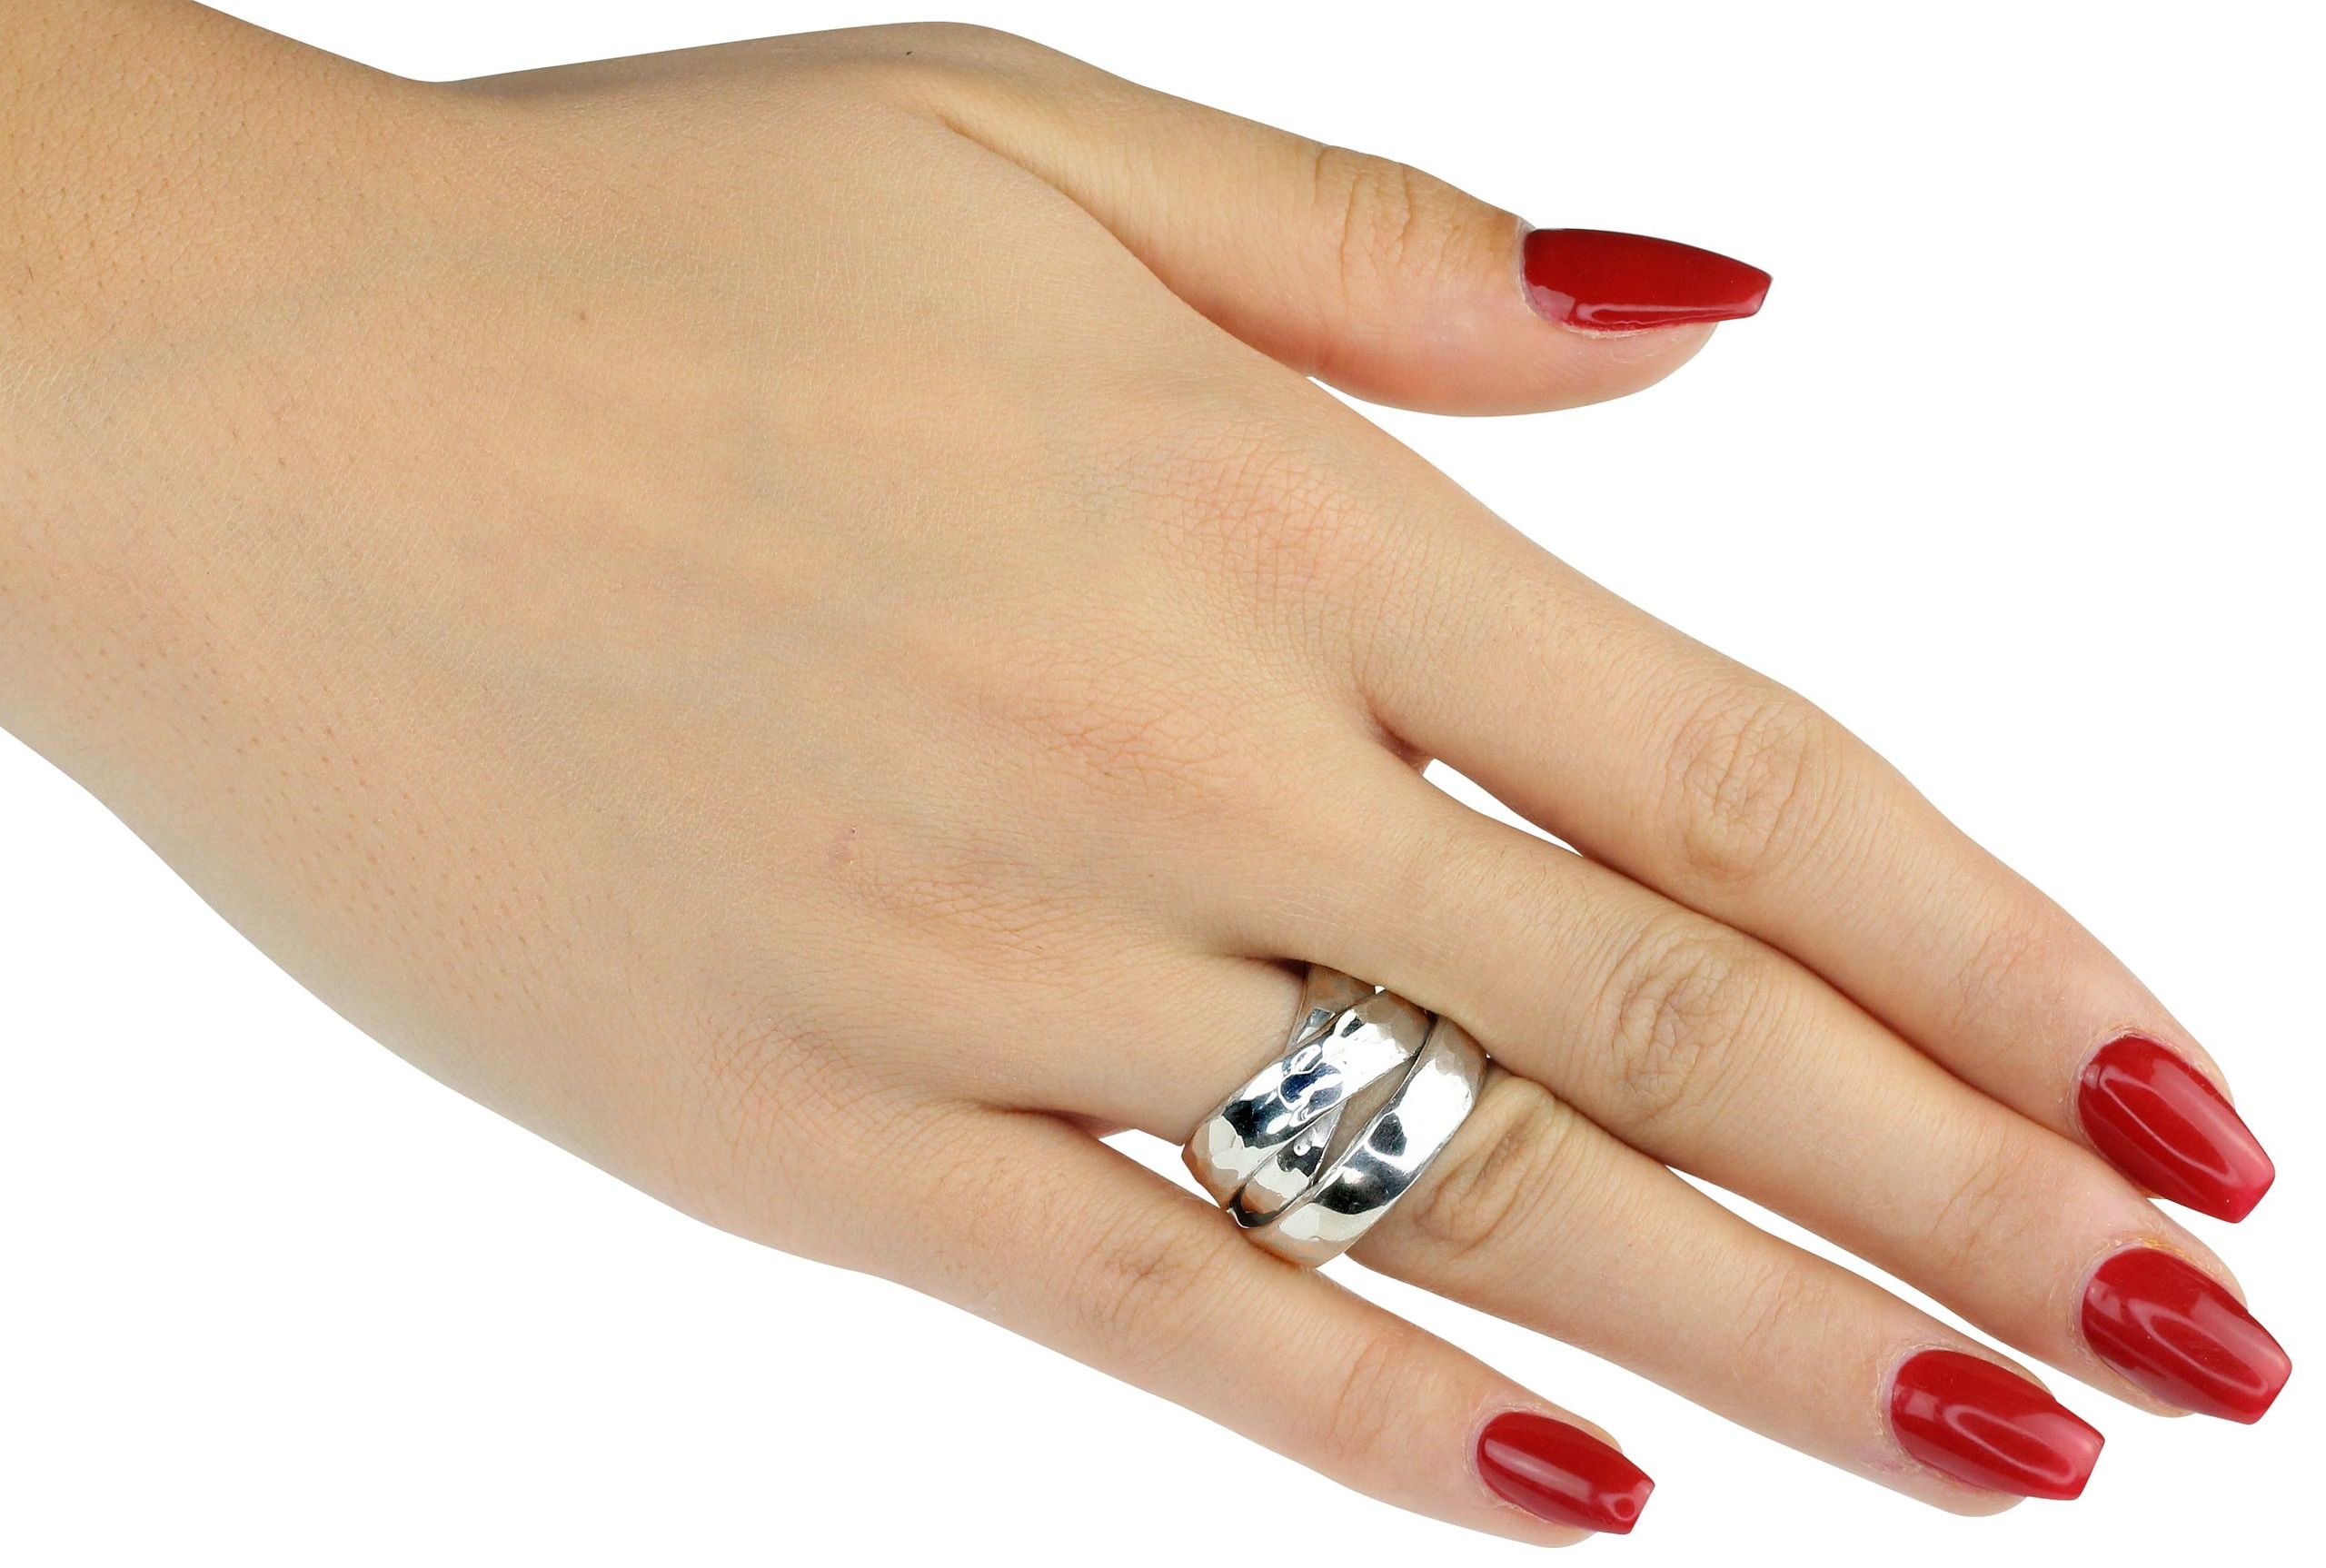 Eleganter Damenring aus Silber in den Größen 64 bis 70 mit drei fest verbundenen Ringschienen. Der Ring ist geschmiedet und hat eine leicht gehämmerte Oberfläche.